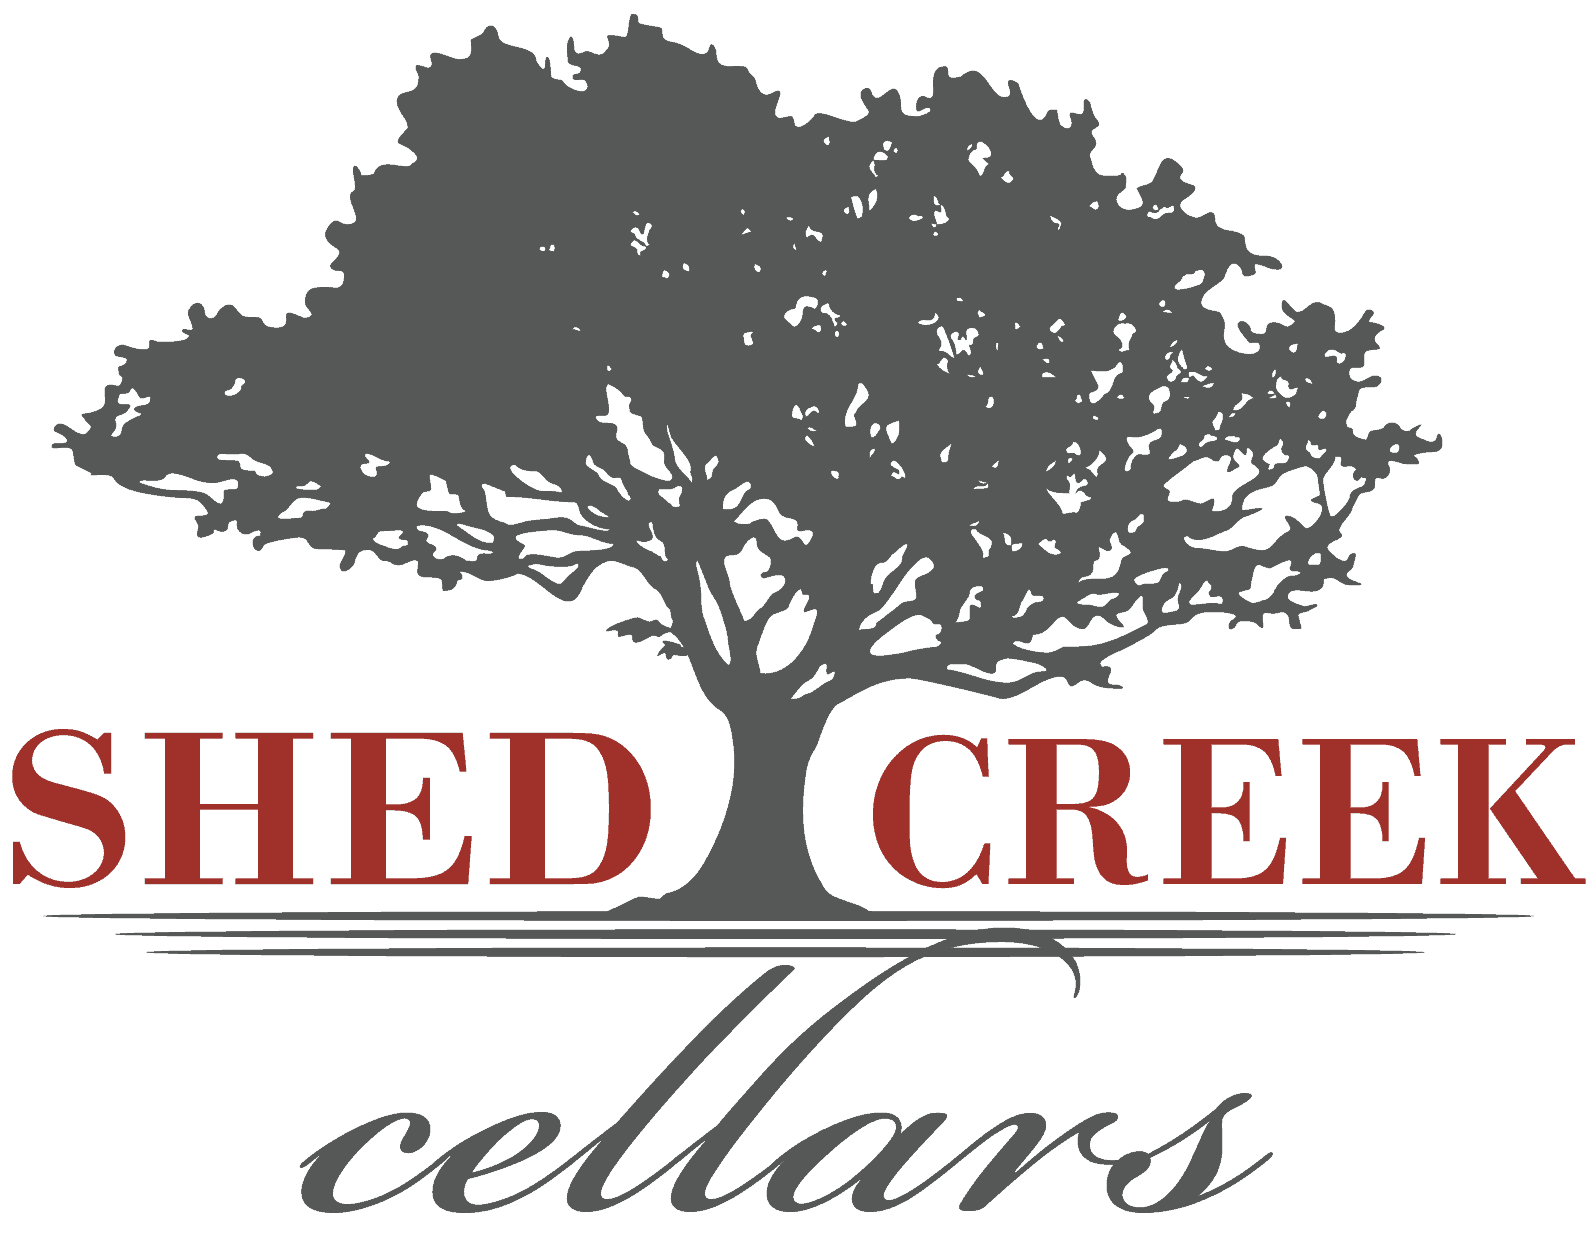 Shed Creek Cellars